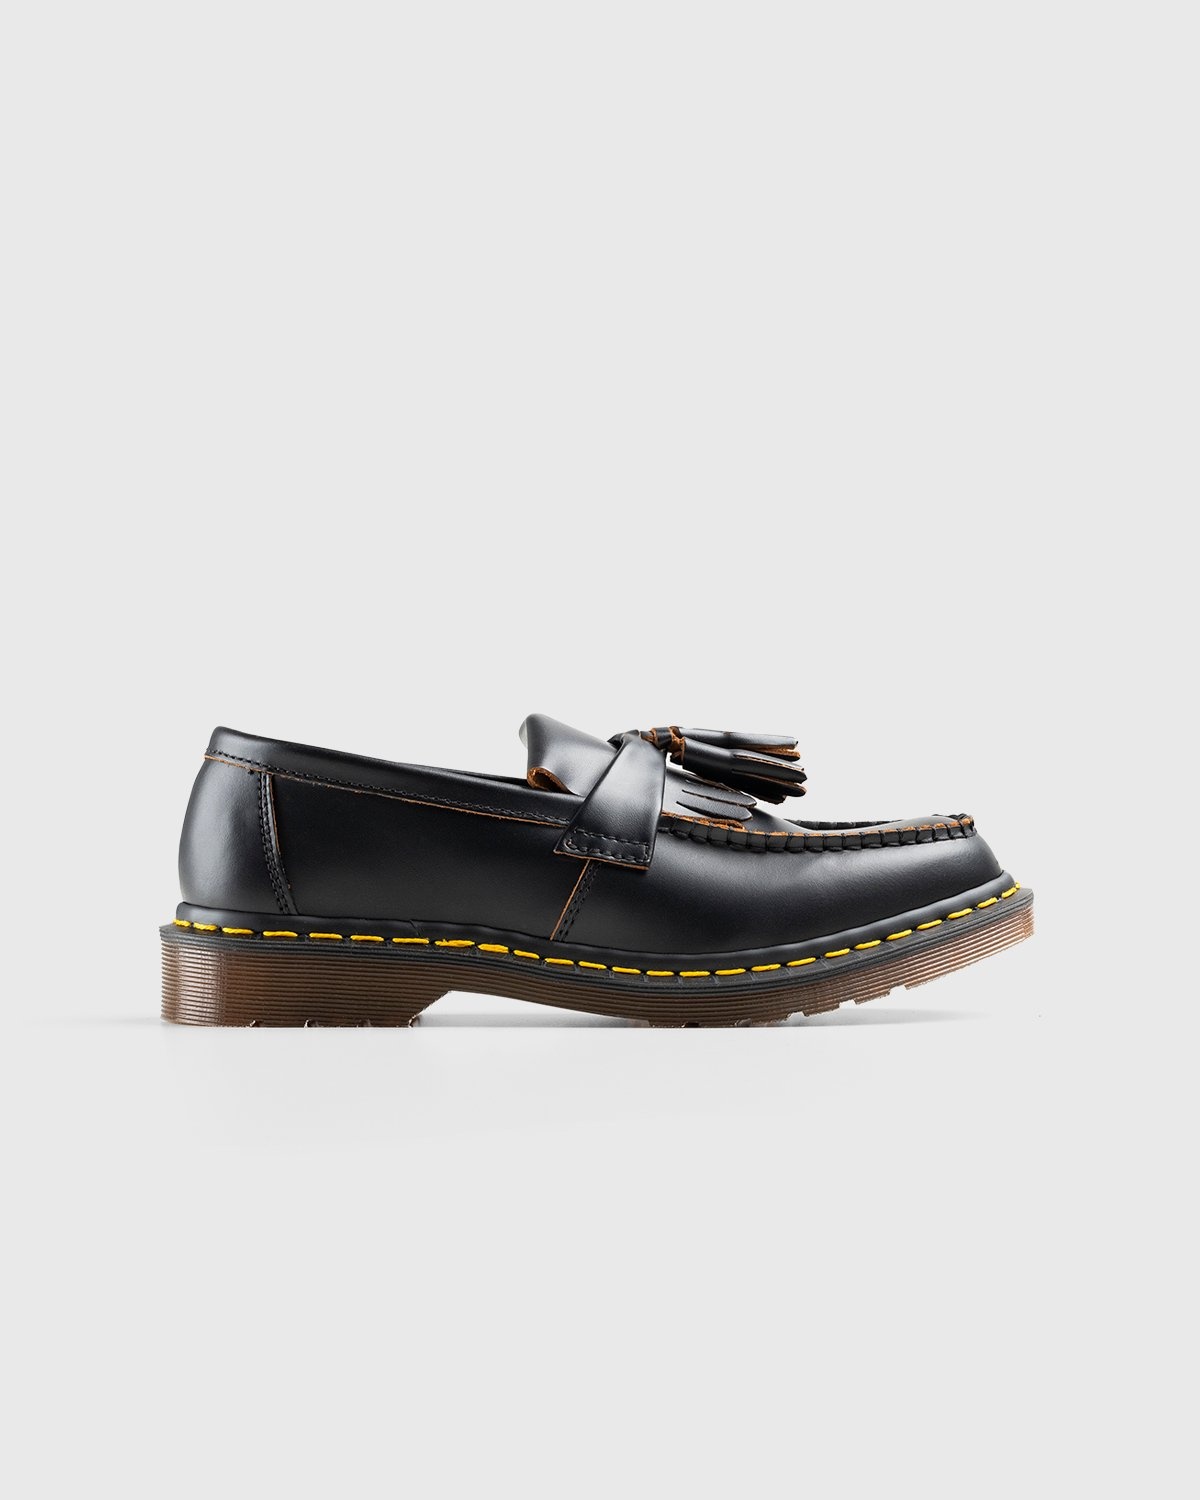 Dr. Martens – Adrian Black Quilon - Shoes - Black - Image 1